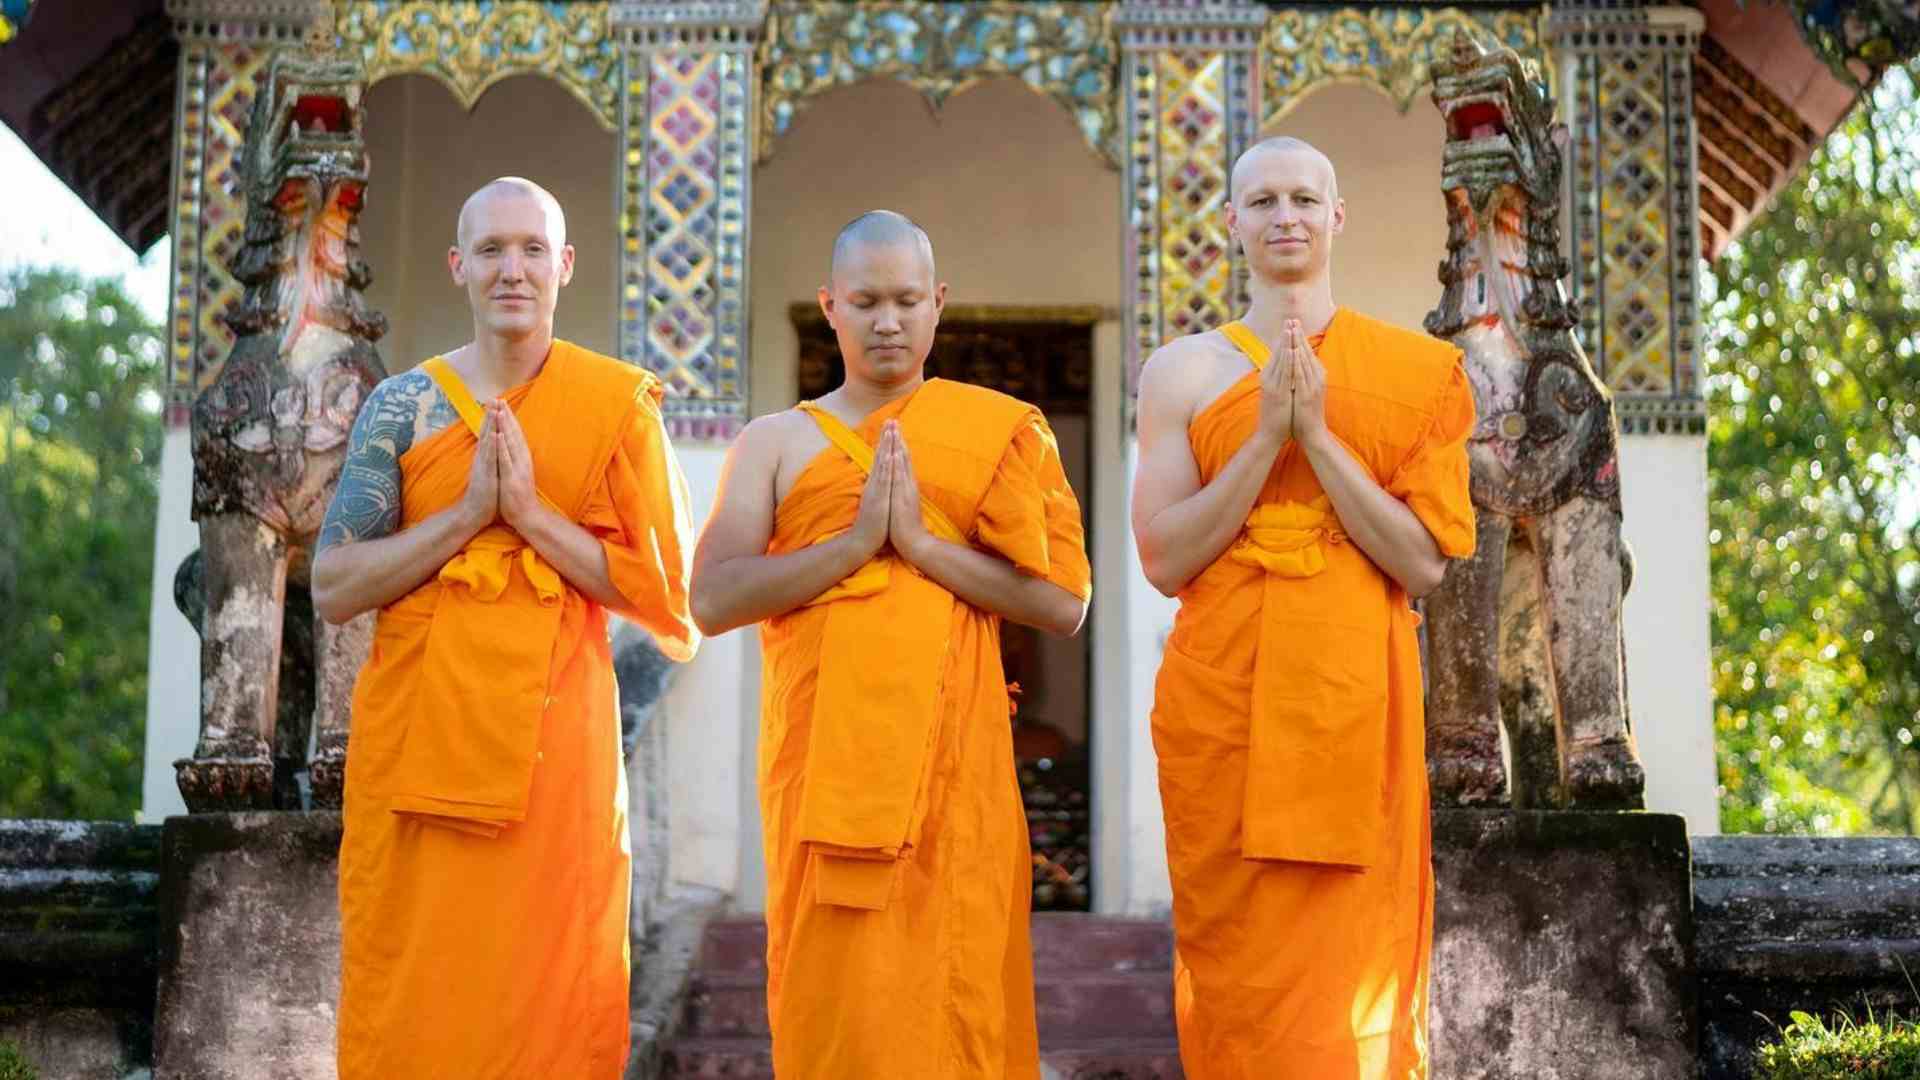 Ve lo ricordate in Serie B? Ora fa il monaco buddista in Thailandia